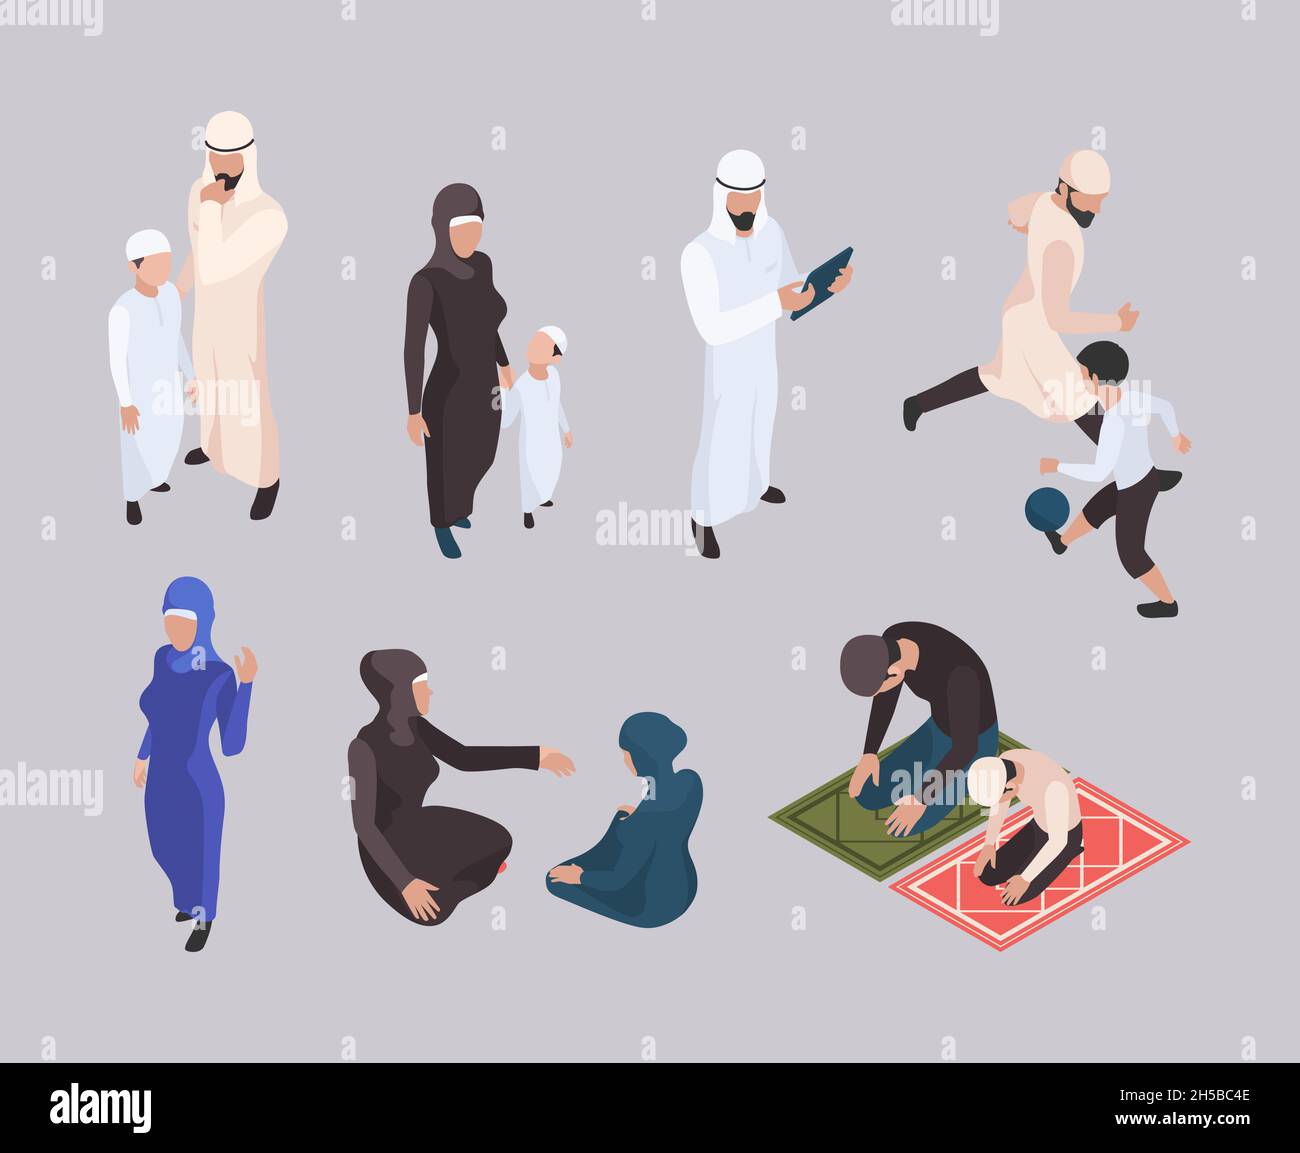 Arabische Familie. Isometrische Ostmenschen in Hijab traditionelle muslimische Kleidung grellen Vektor-Personen Stock Vektor